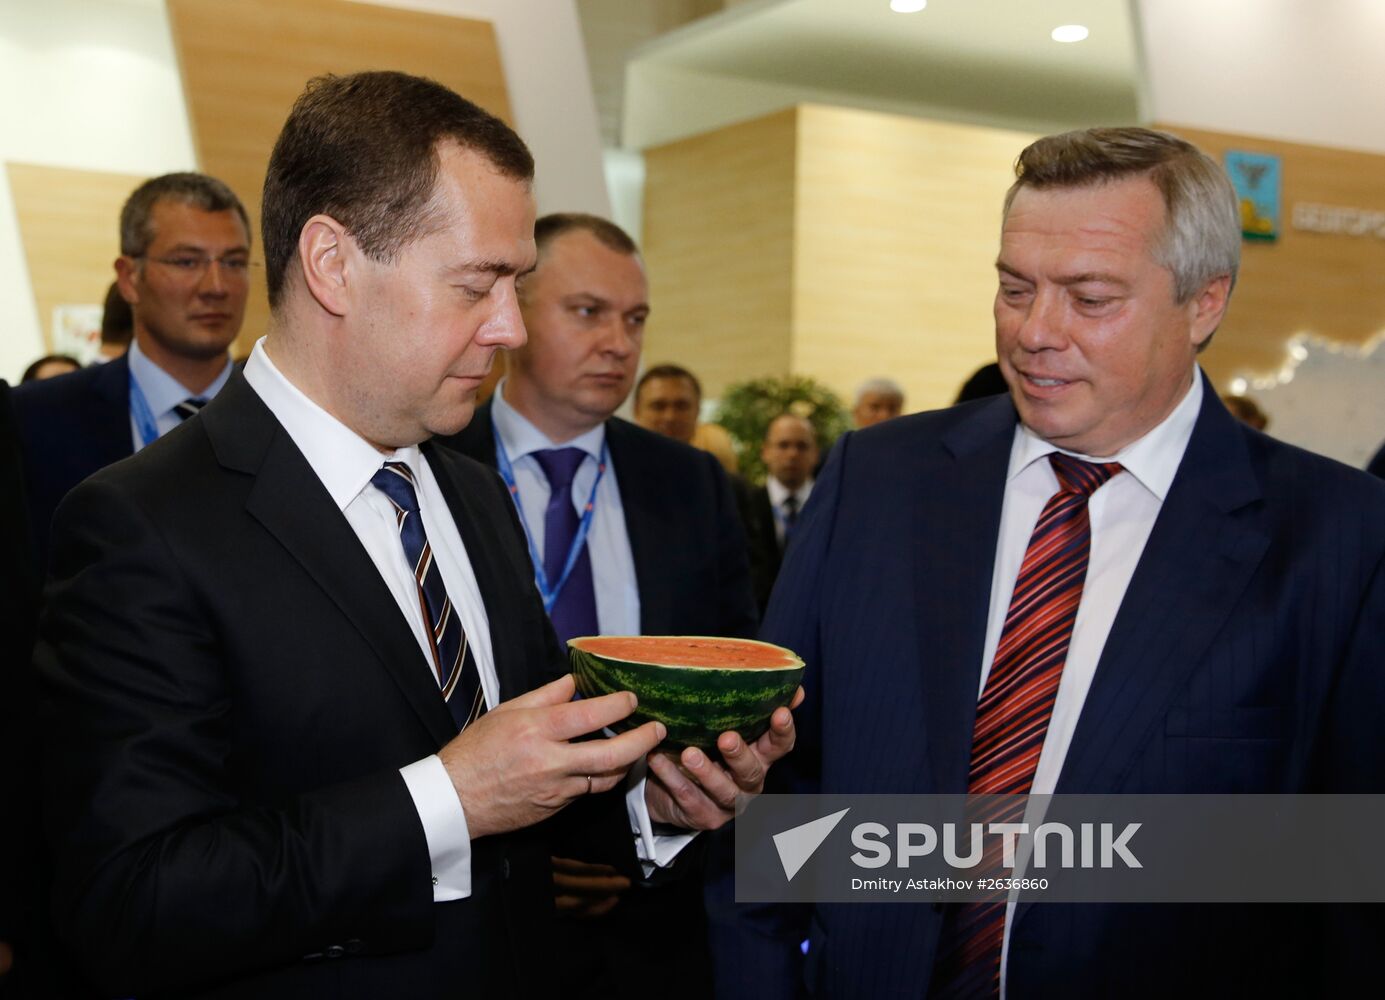 Prime Minister Medvedev visits Southern Federal District